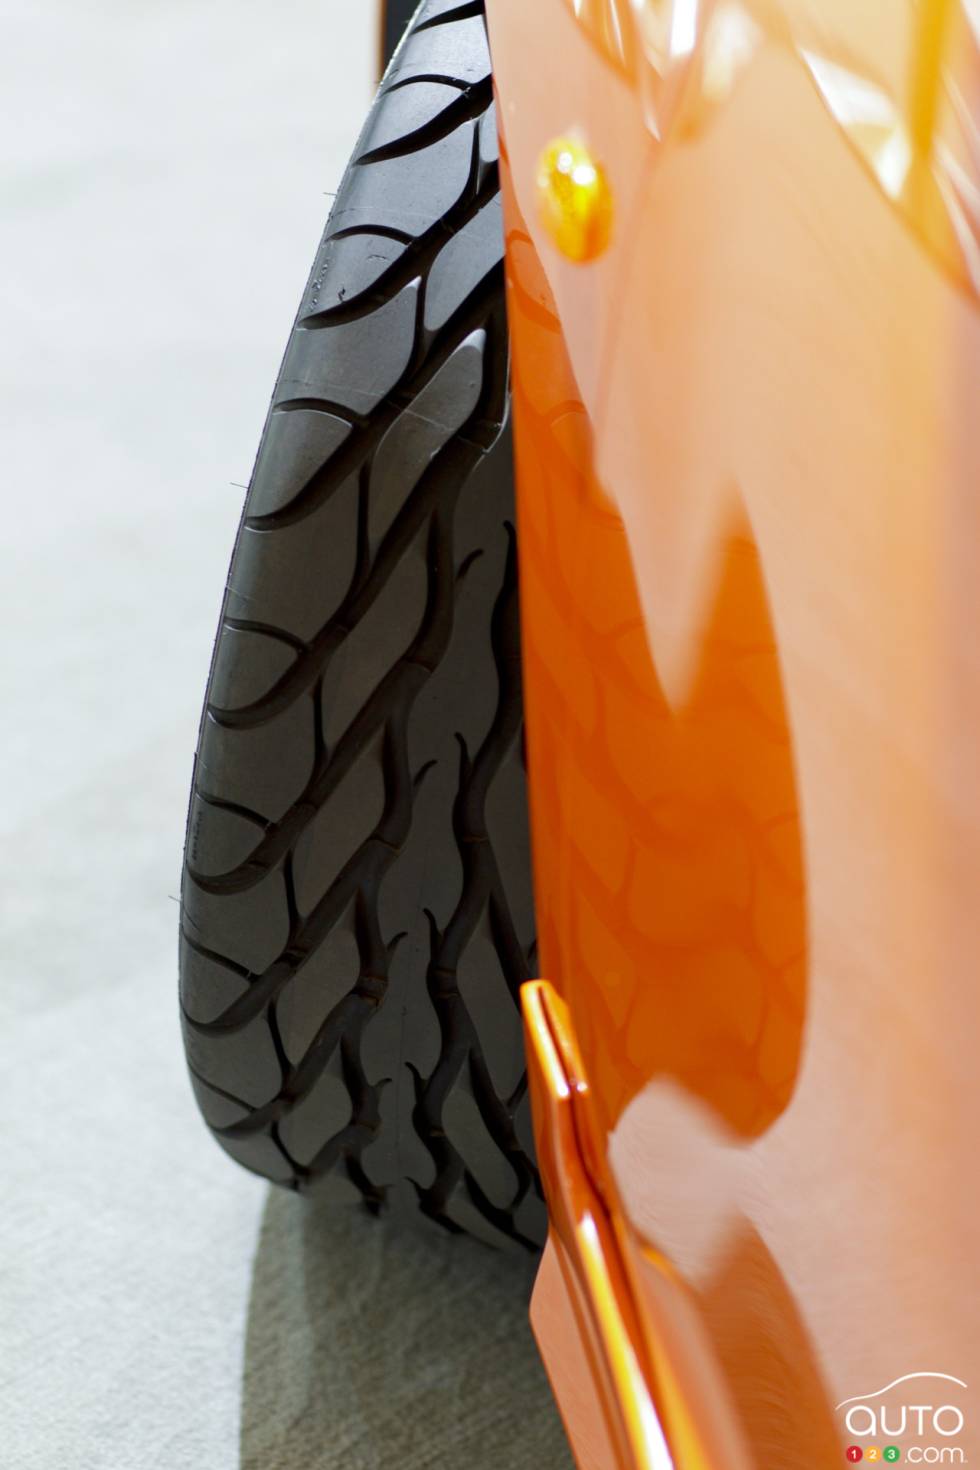 Tire details